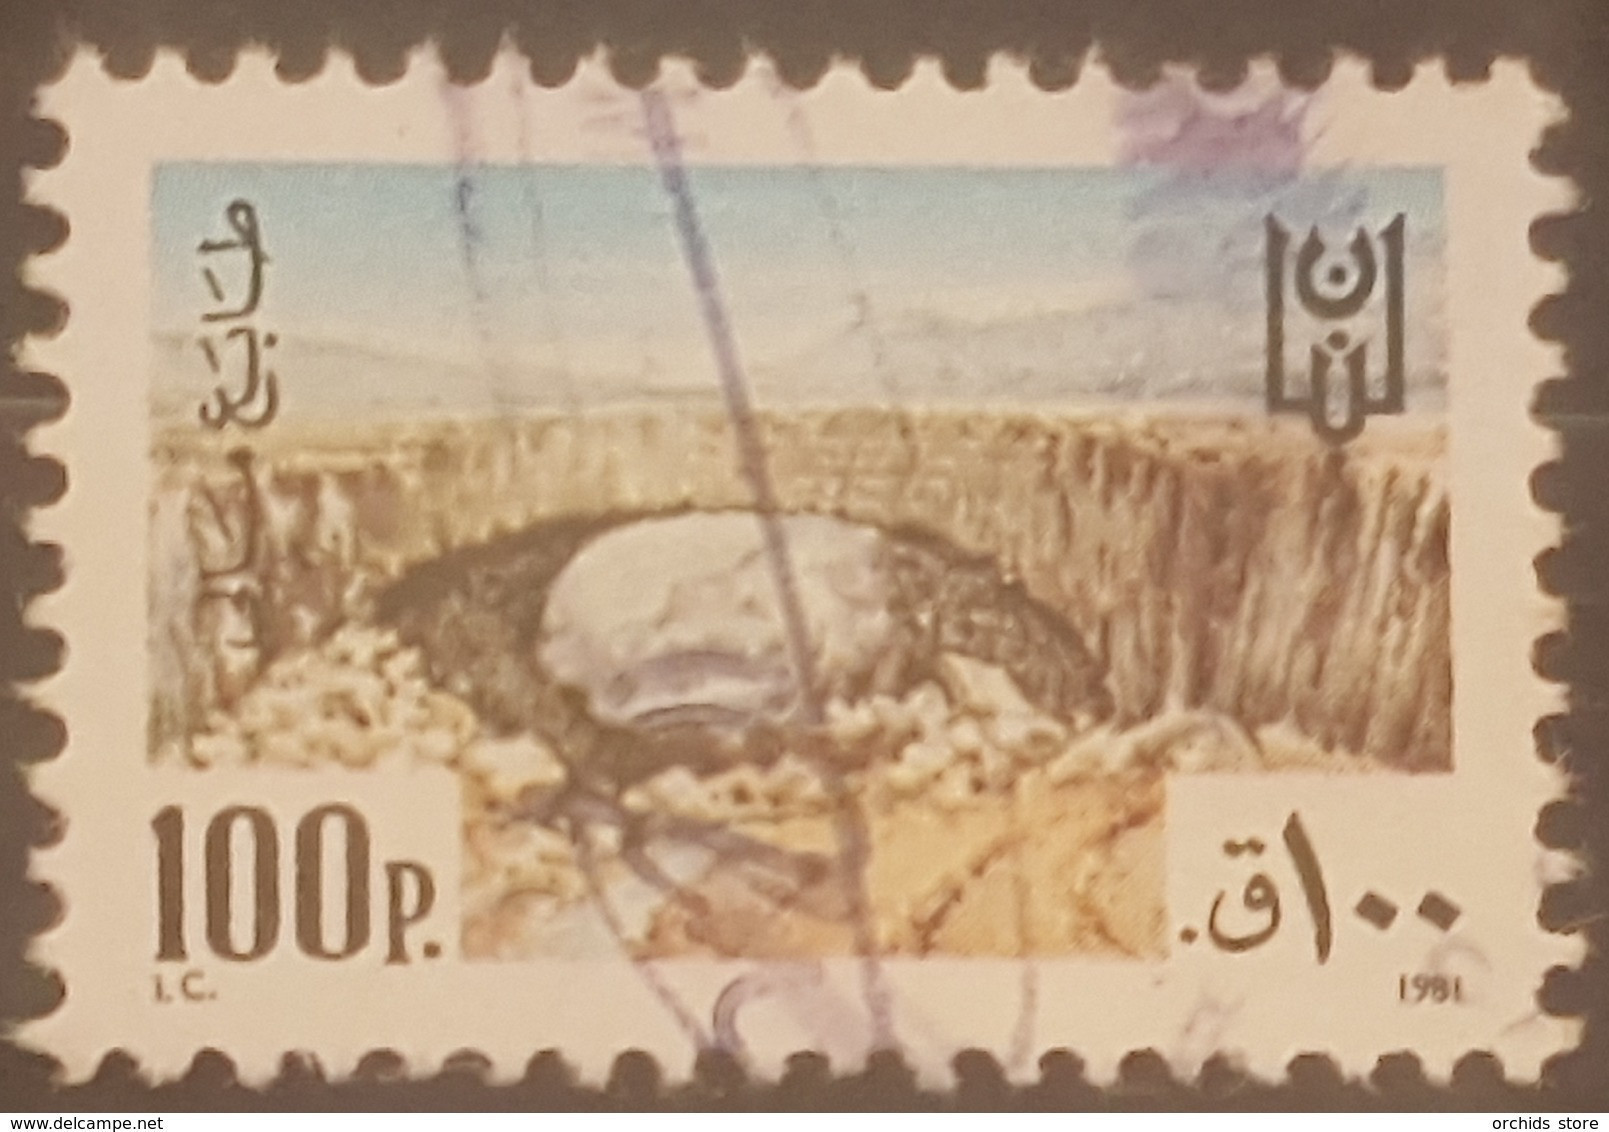 Lebanon 1981 Fiscal Revenue Stamp 100p - Libanon